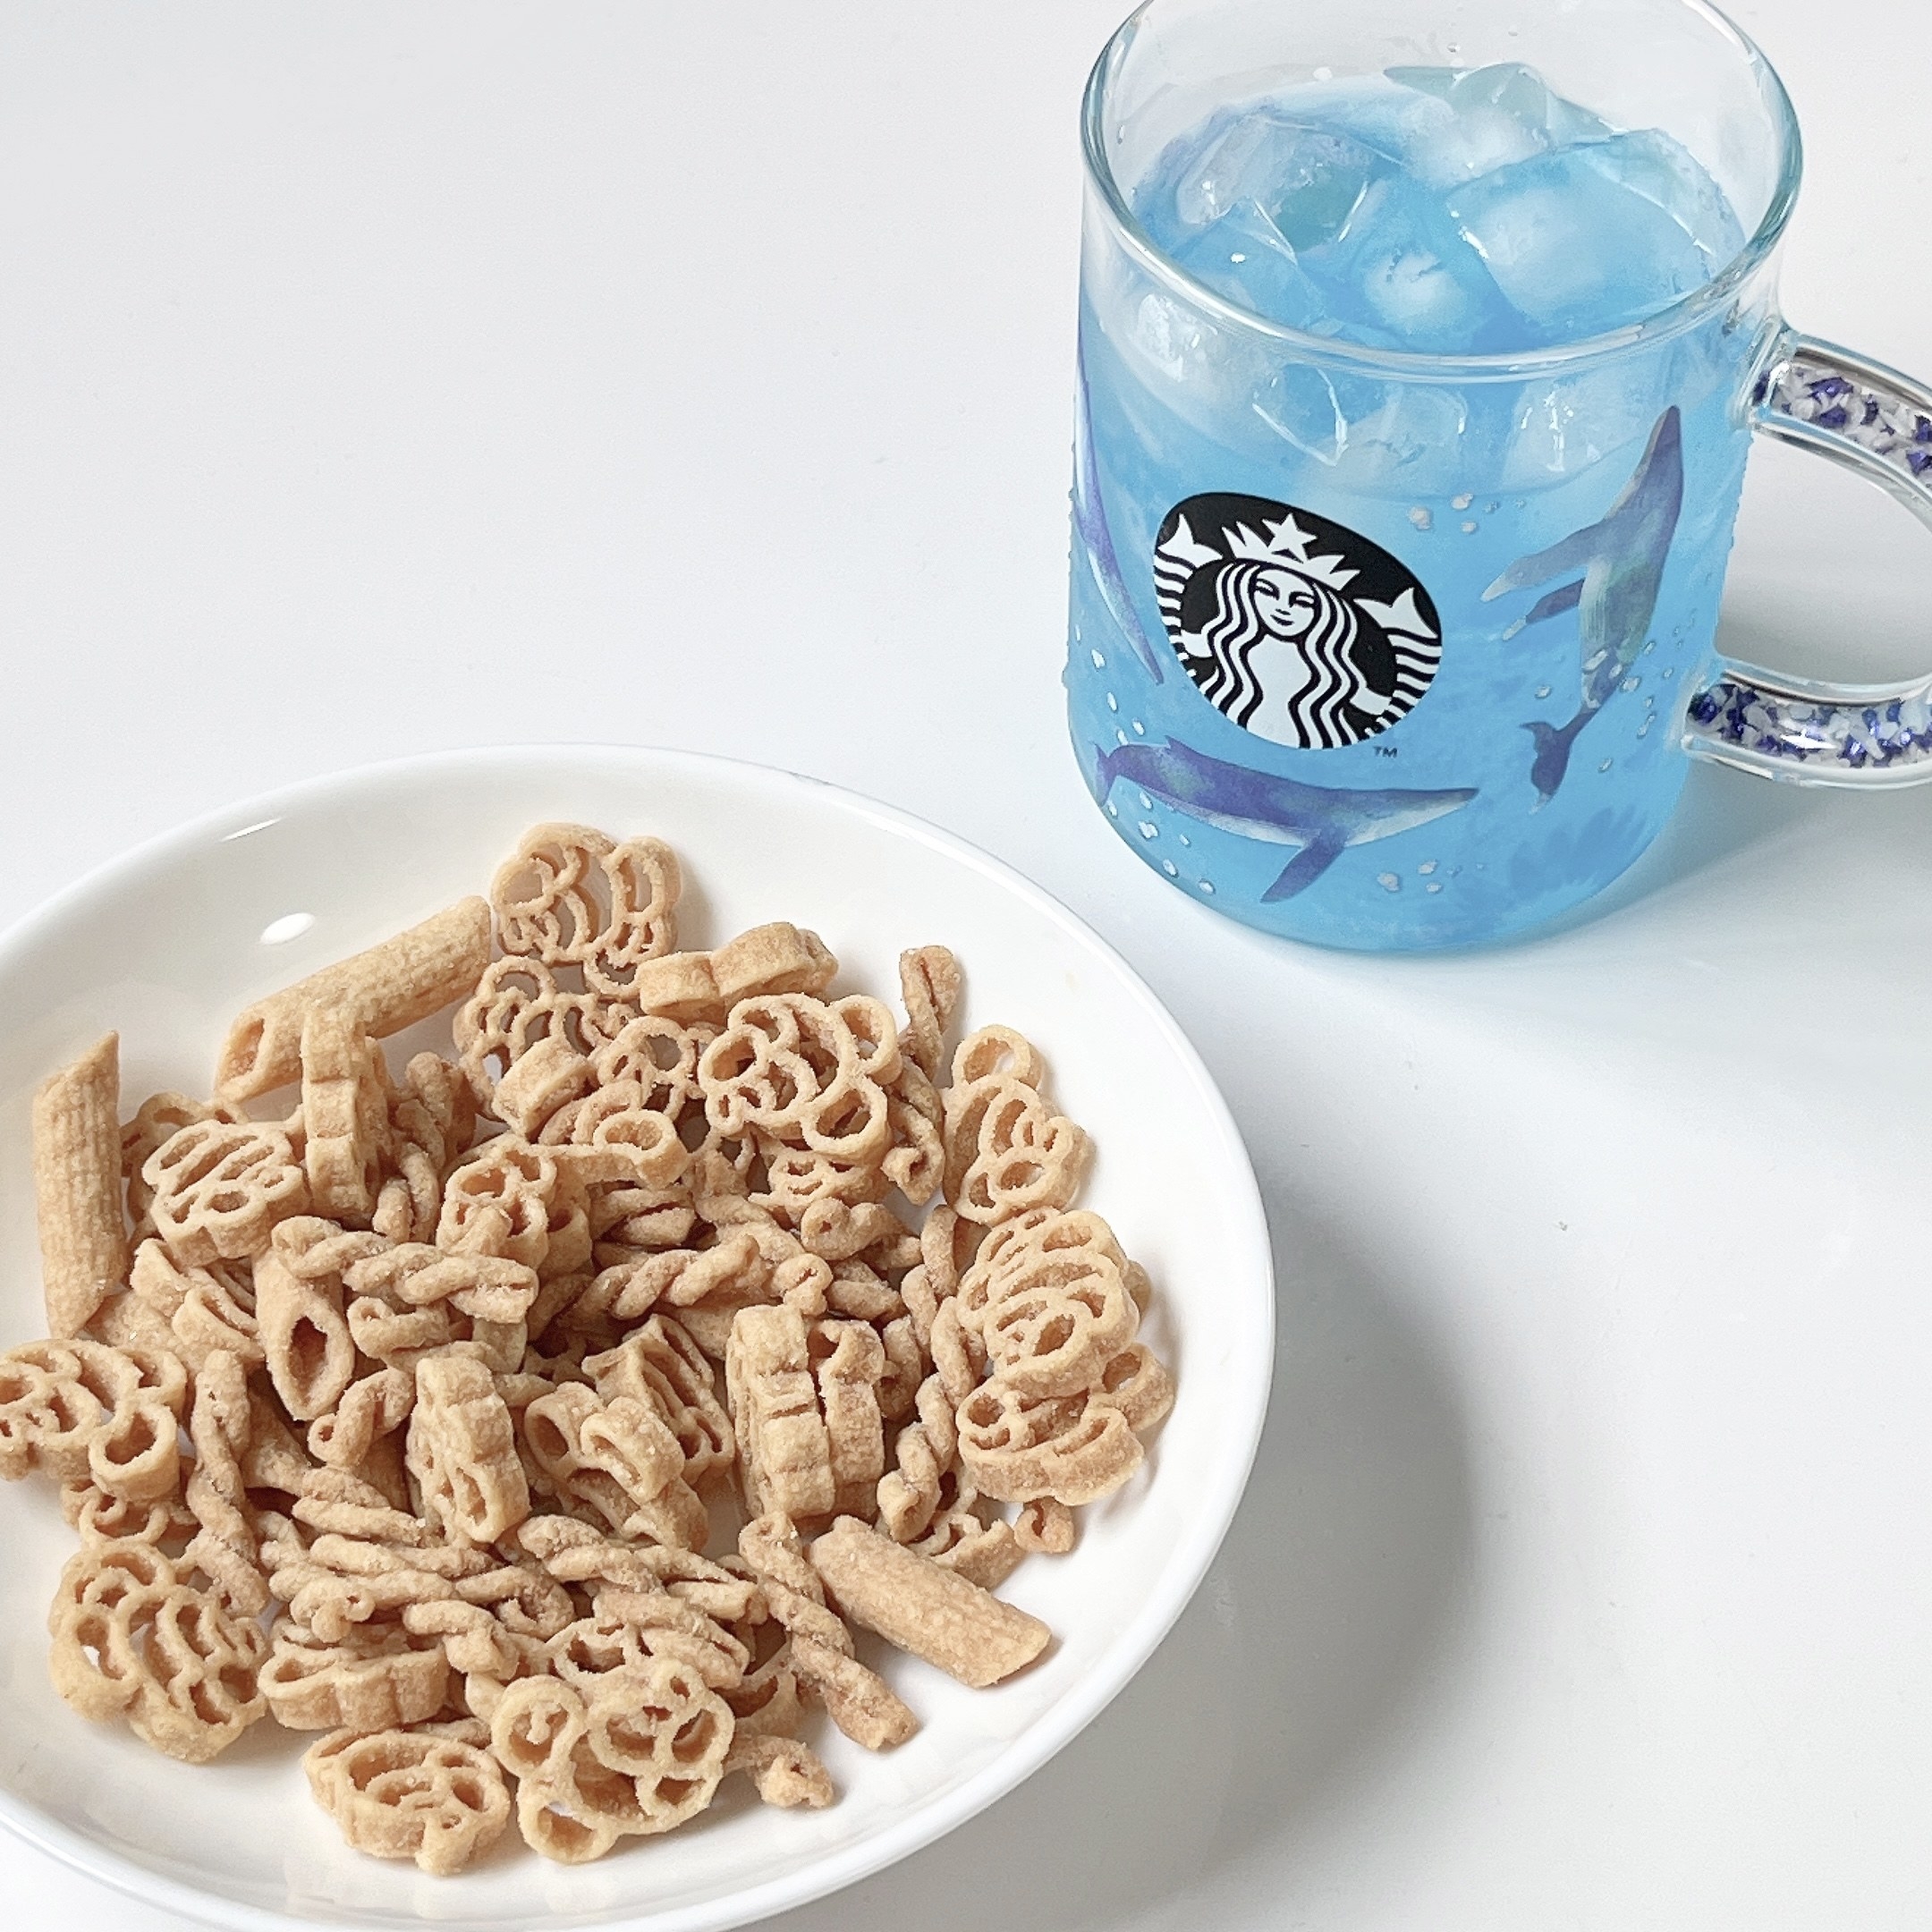 Starbucks Coffee（スターバックスコーヒー）のおすすめマグカップ「ビーズハンドル耐熱グラスマグクジラ414ml」